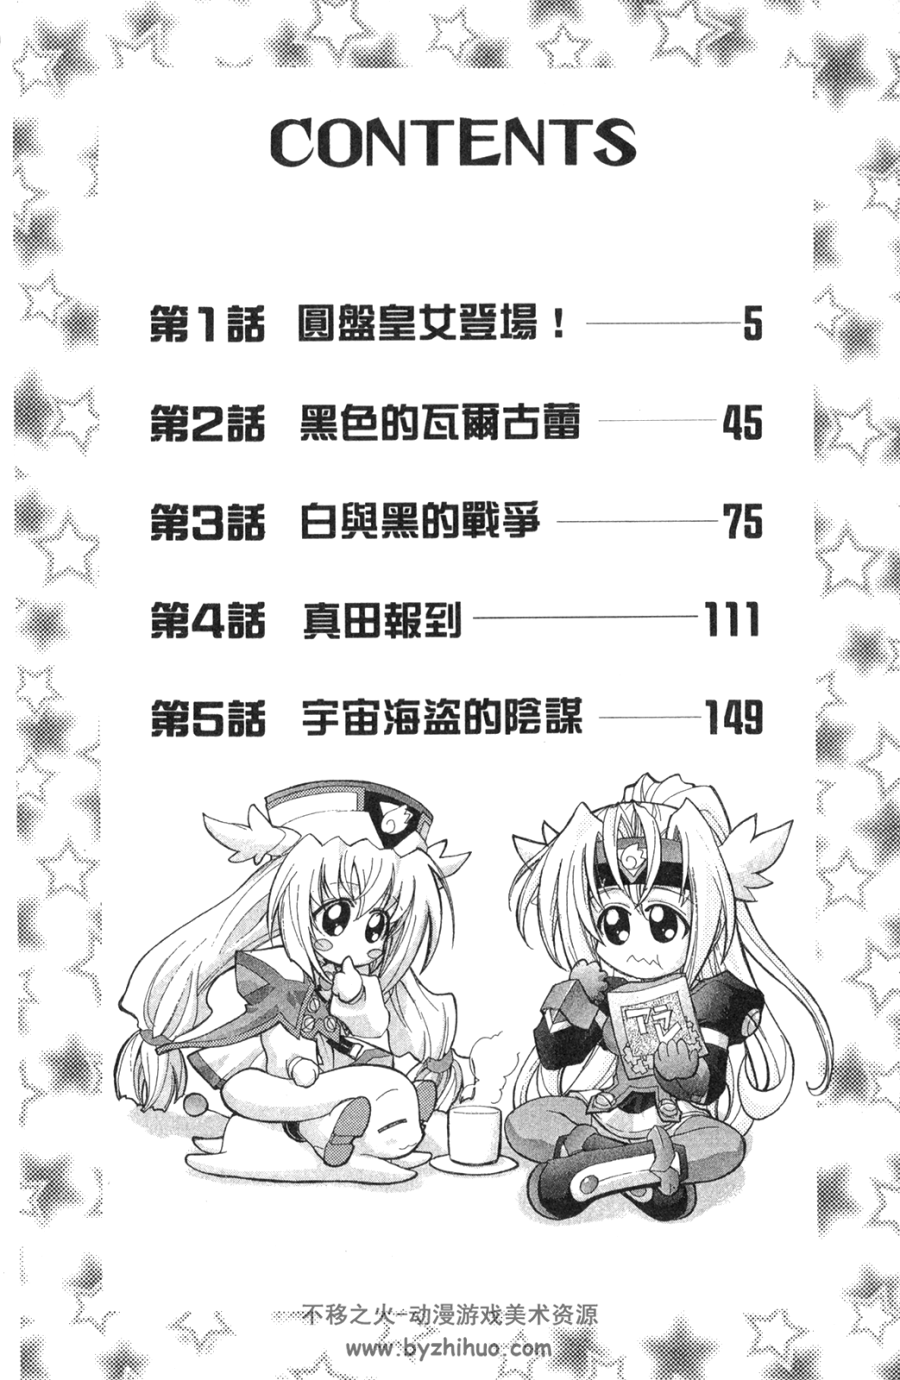 圆盘皇女 1-11卷 东立 中文版 百度网盘下载 1.48GB